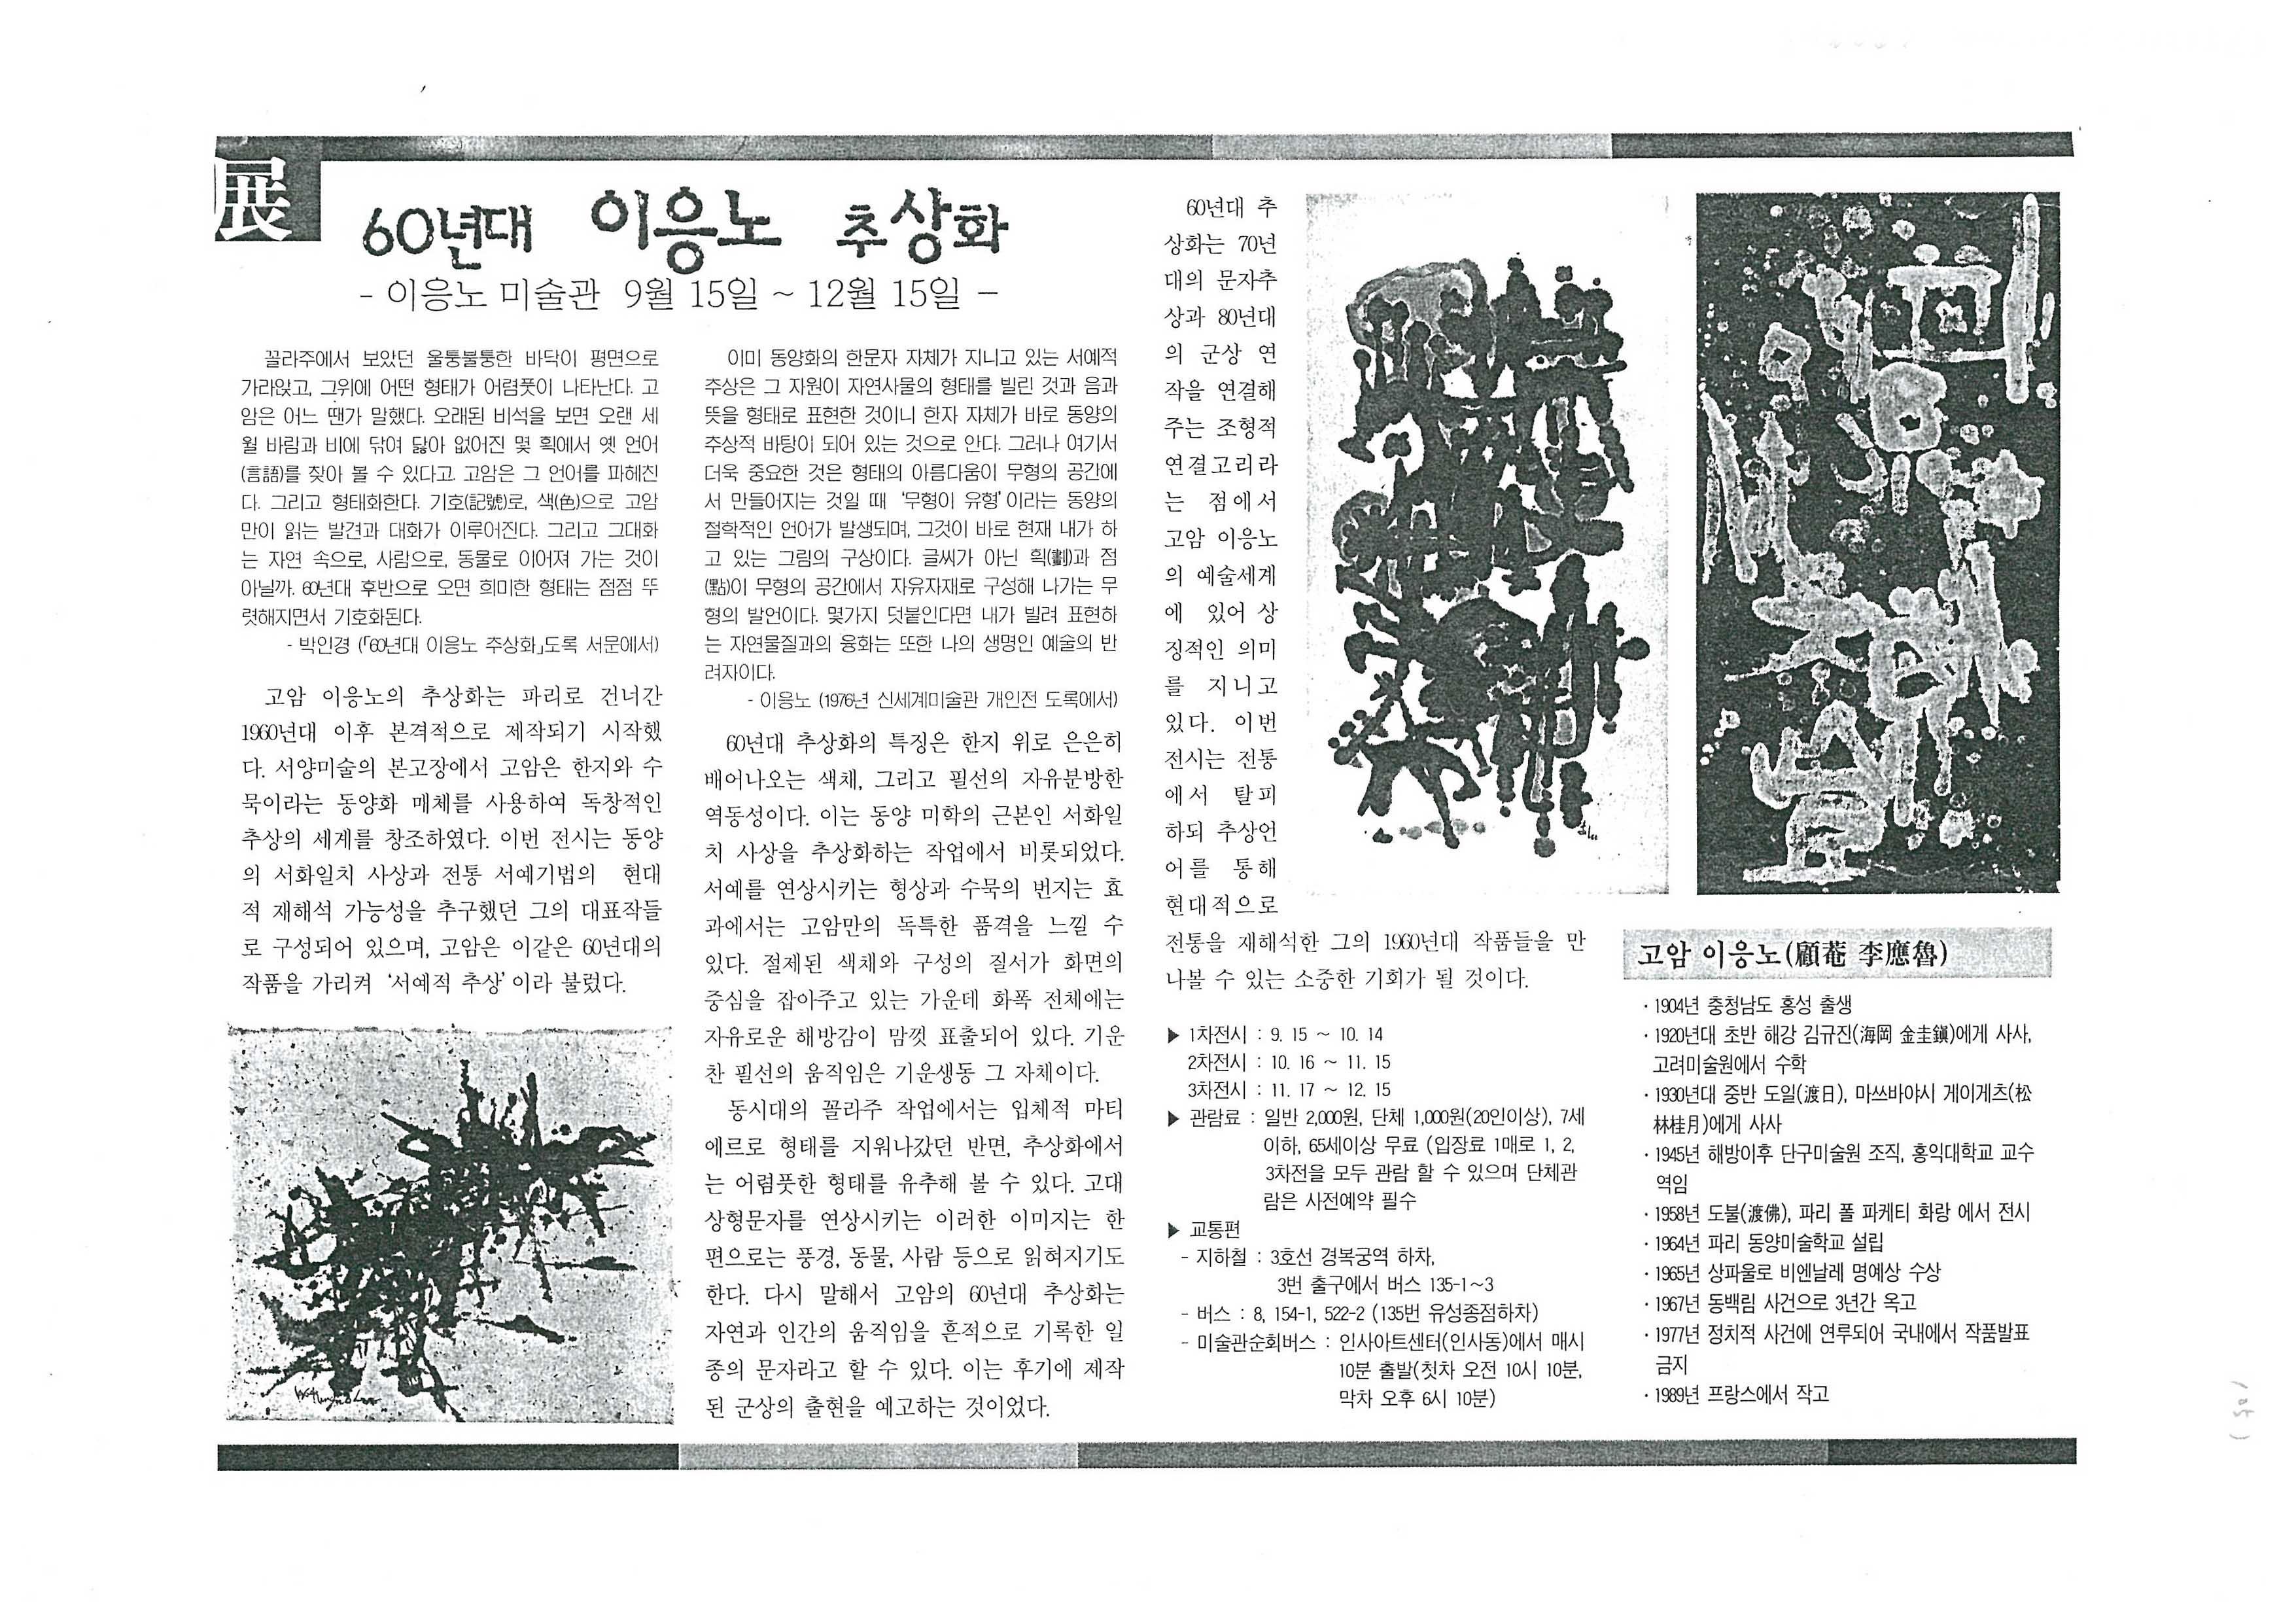  「60년대 이응노 추상화」, 『미술신문』 